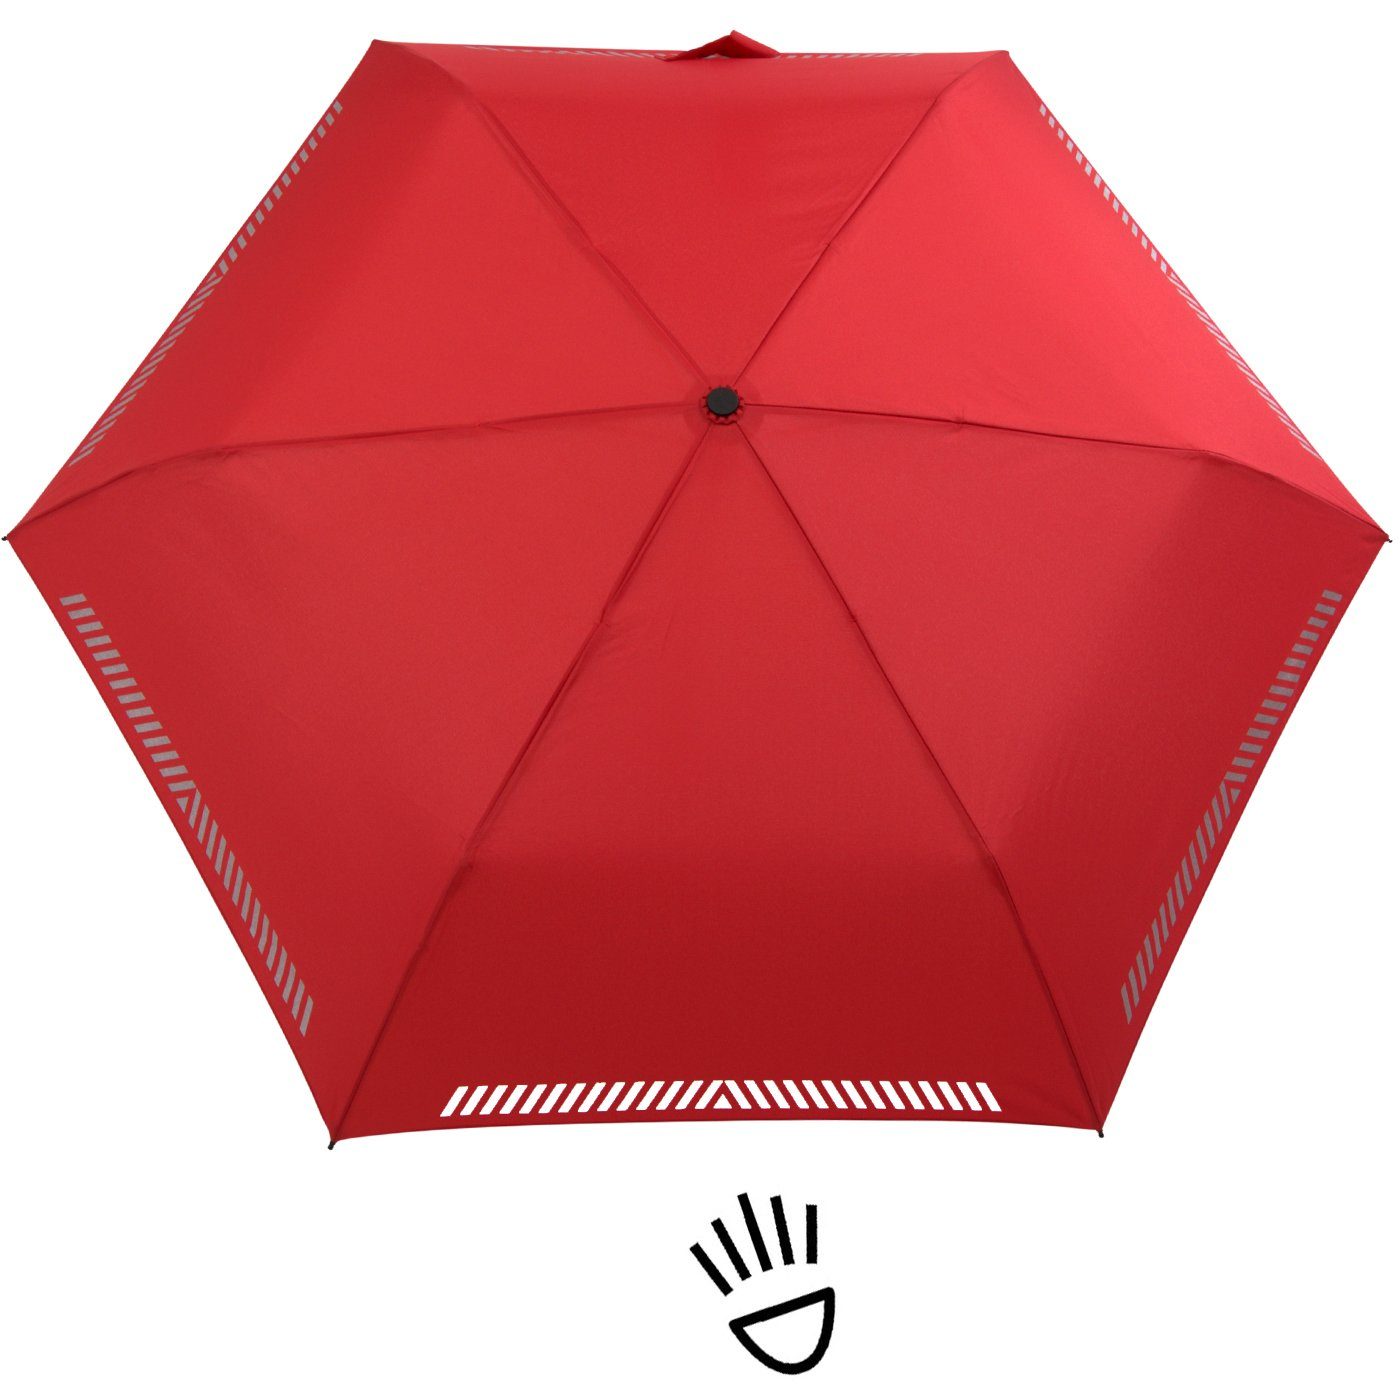 Kinderschirm rot Reflex-Streifen durch Auf-Zu-Automatik, mit Taschenregenschirm Sicherheit - reflektierend, iX-brella